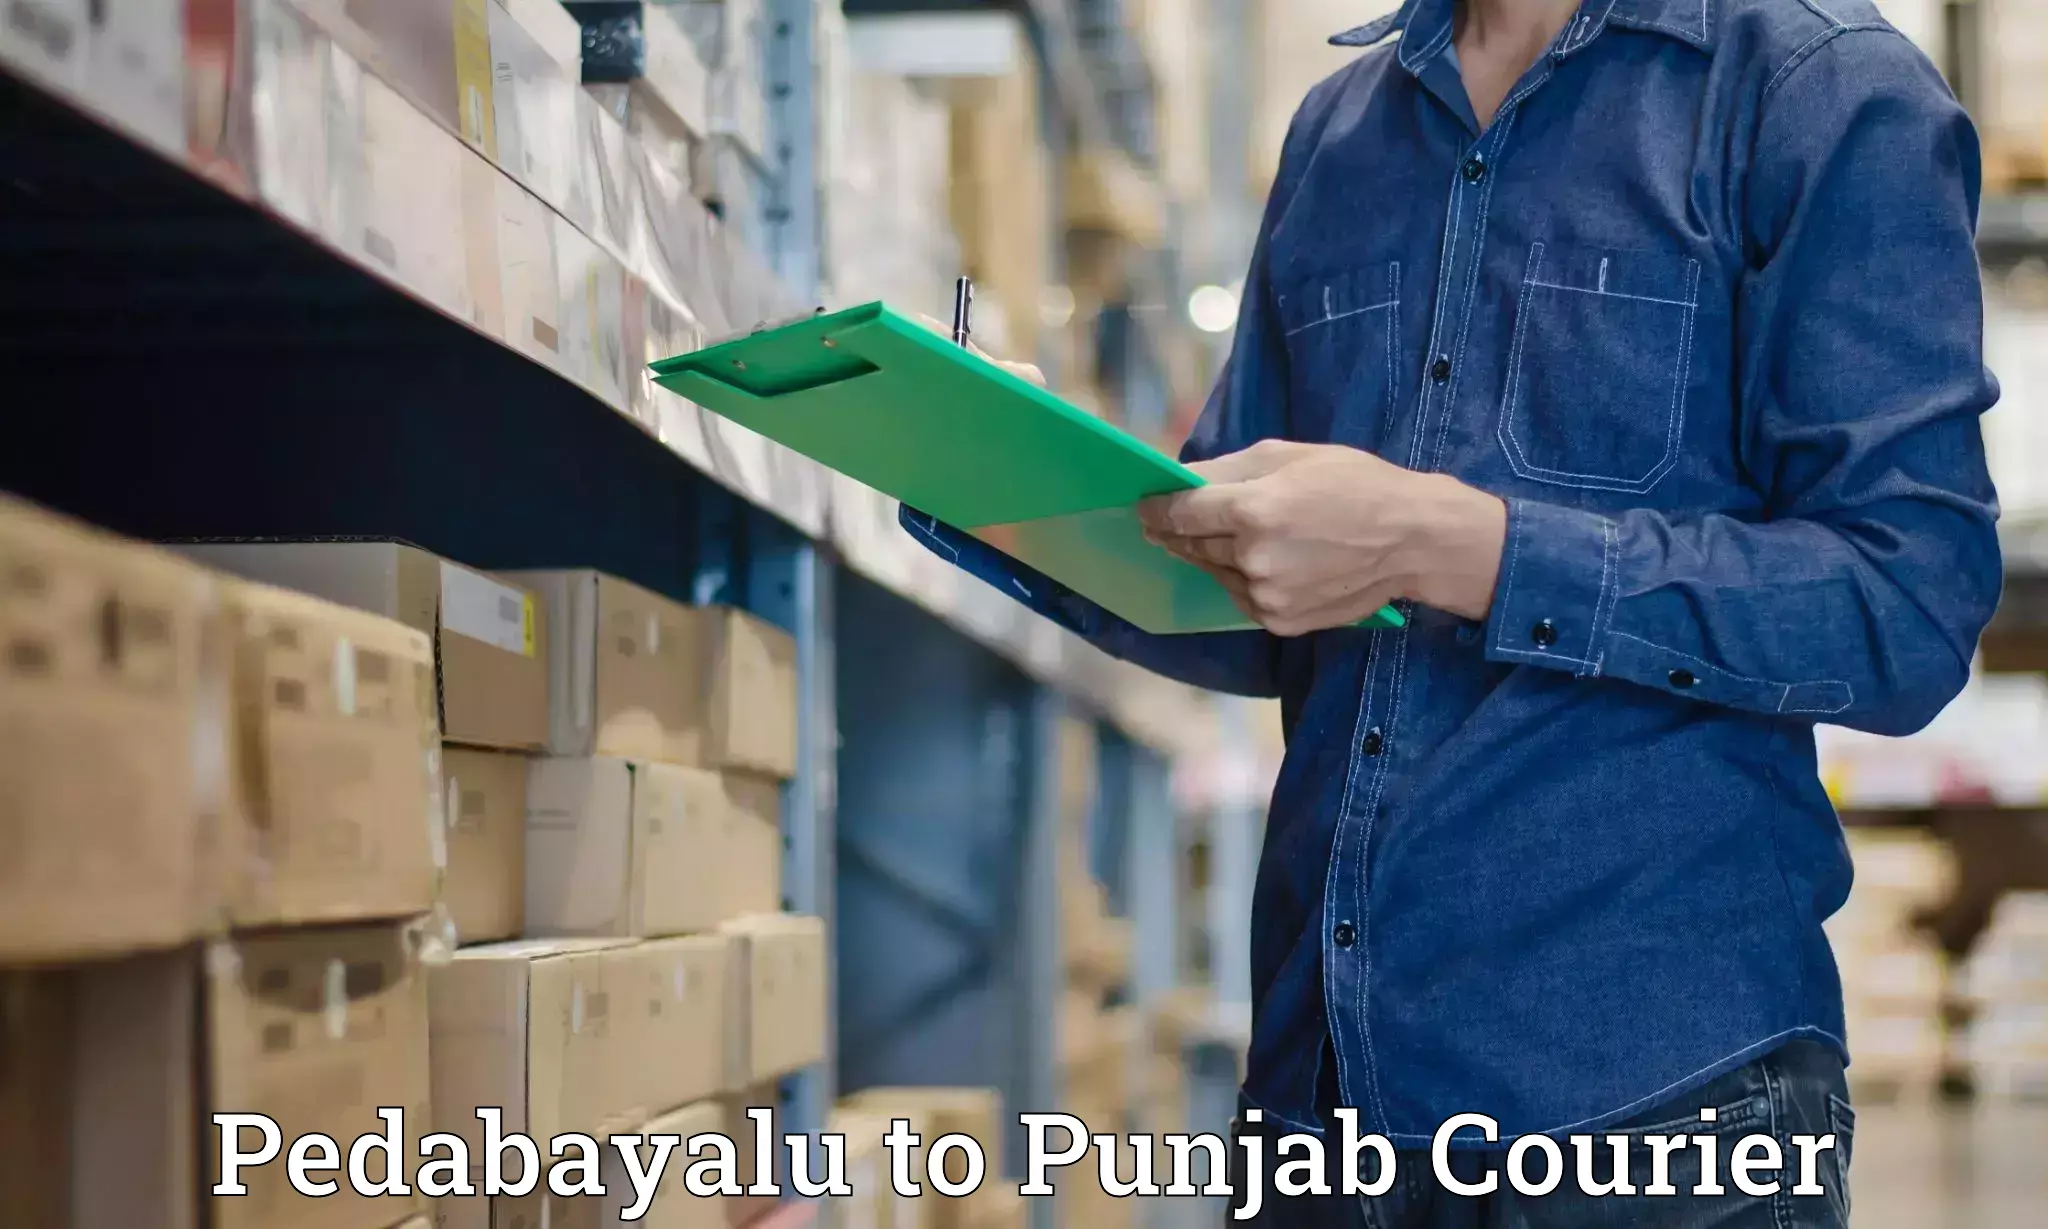 Courier service booking Pedabayalu to Central University of Punjab Bathinda